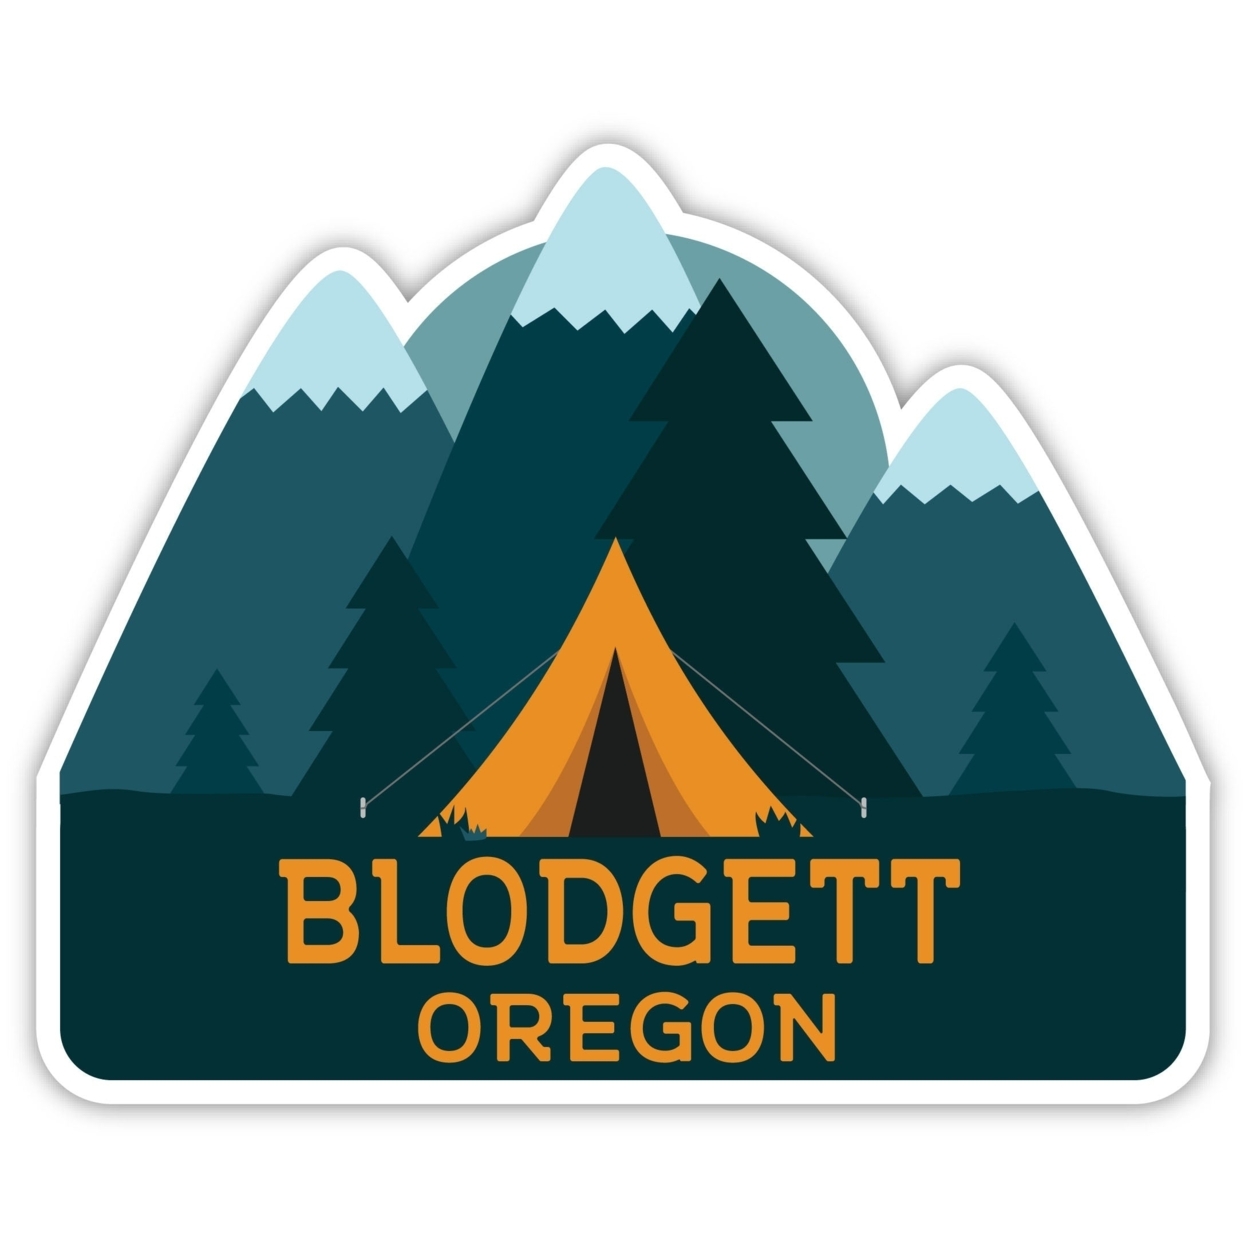 Blodgett Oregon Souvenir Decorative Stickers (Choose Theme And Size) - Single Unit, 6-Inch, Tent